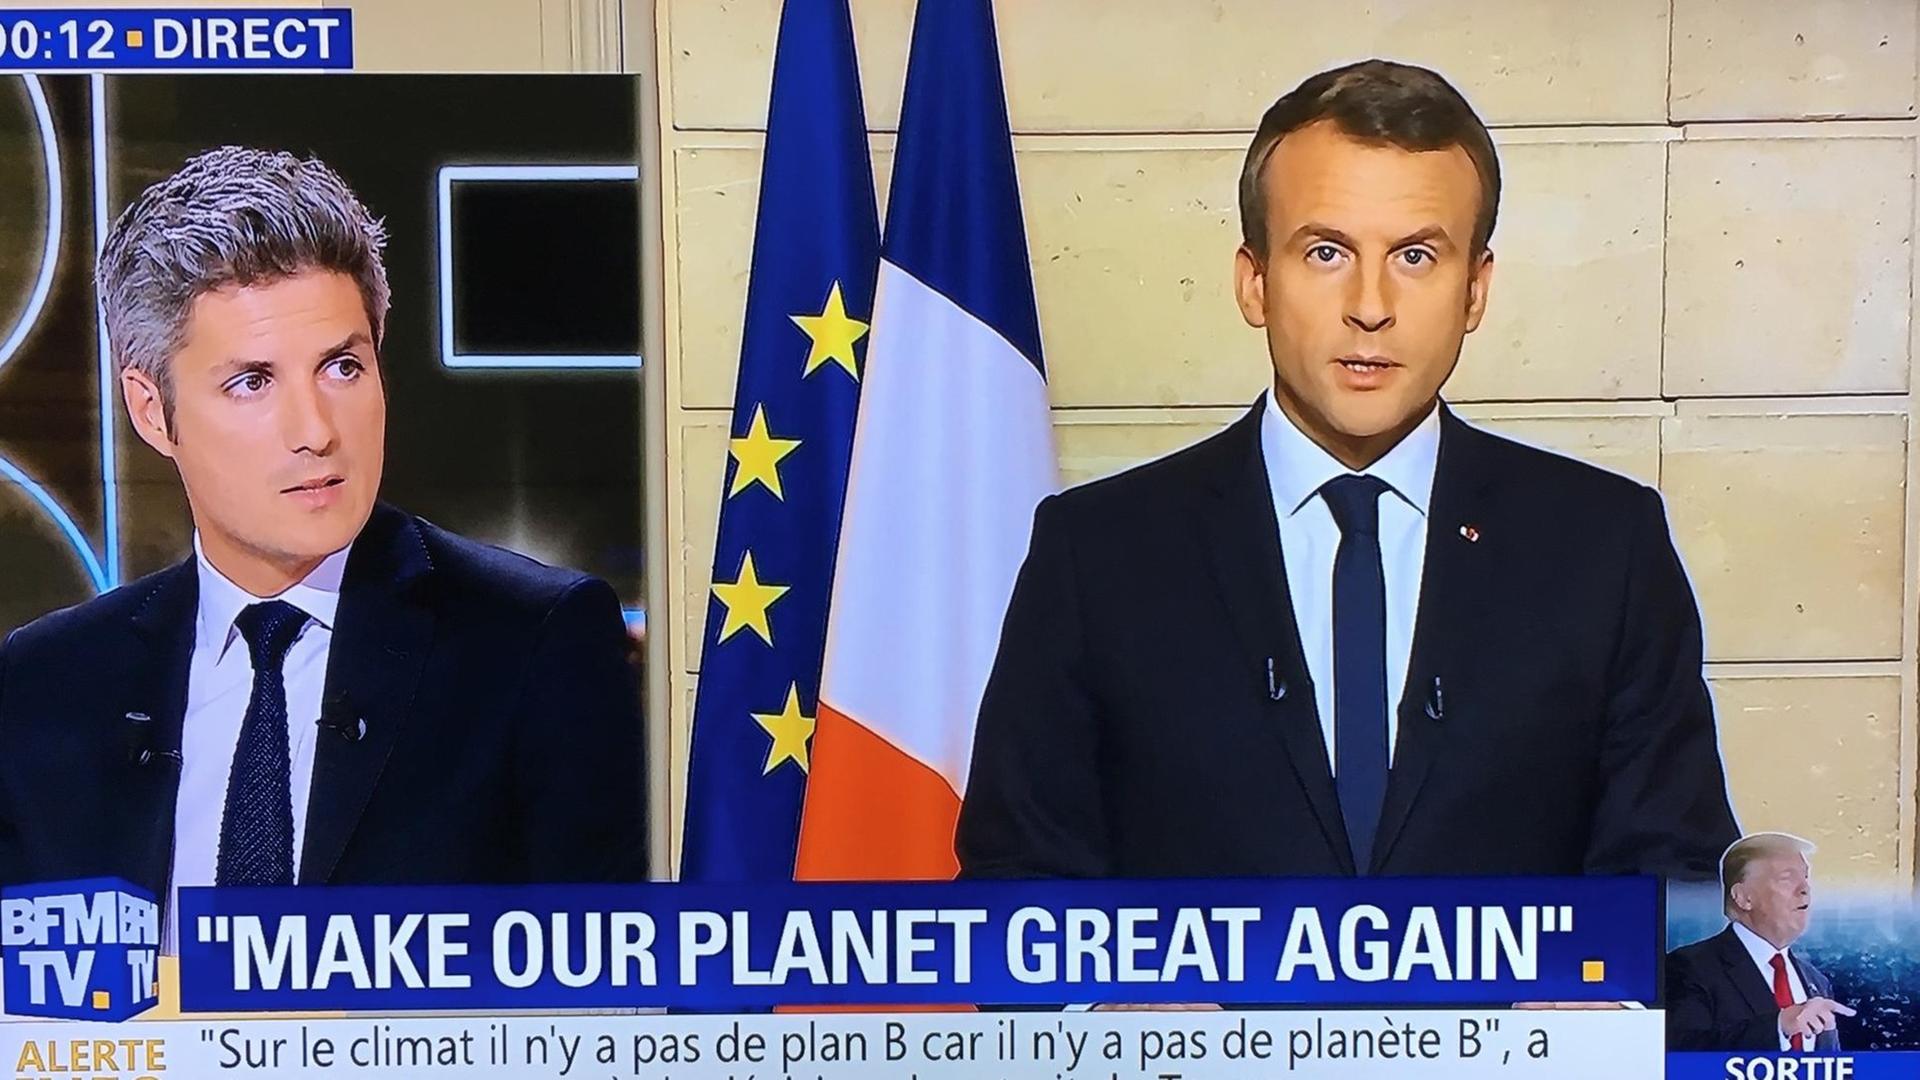 Frankreichs Präsident Macron in einer Fernsehsendung, eingeblendet der Slogan: "Make Our Planet Great Again".